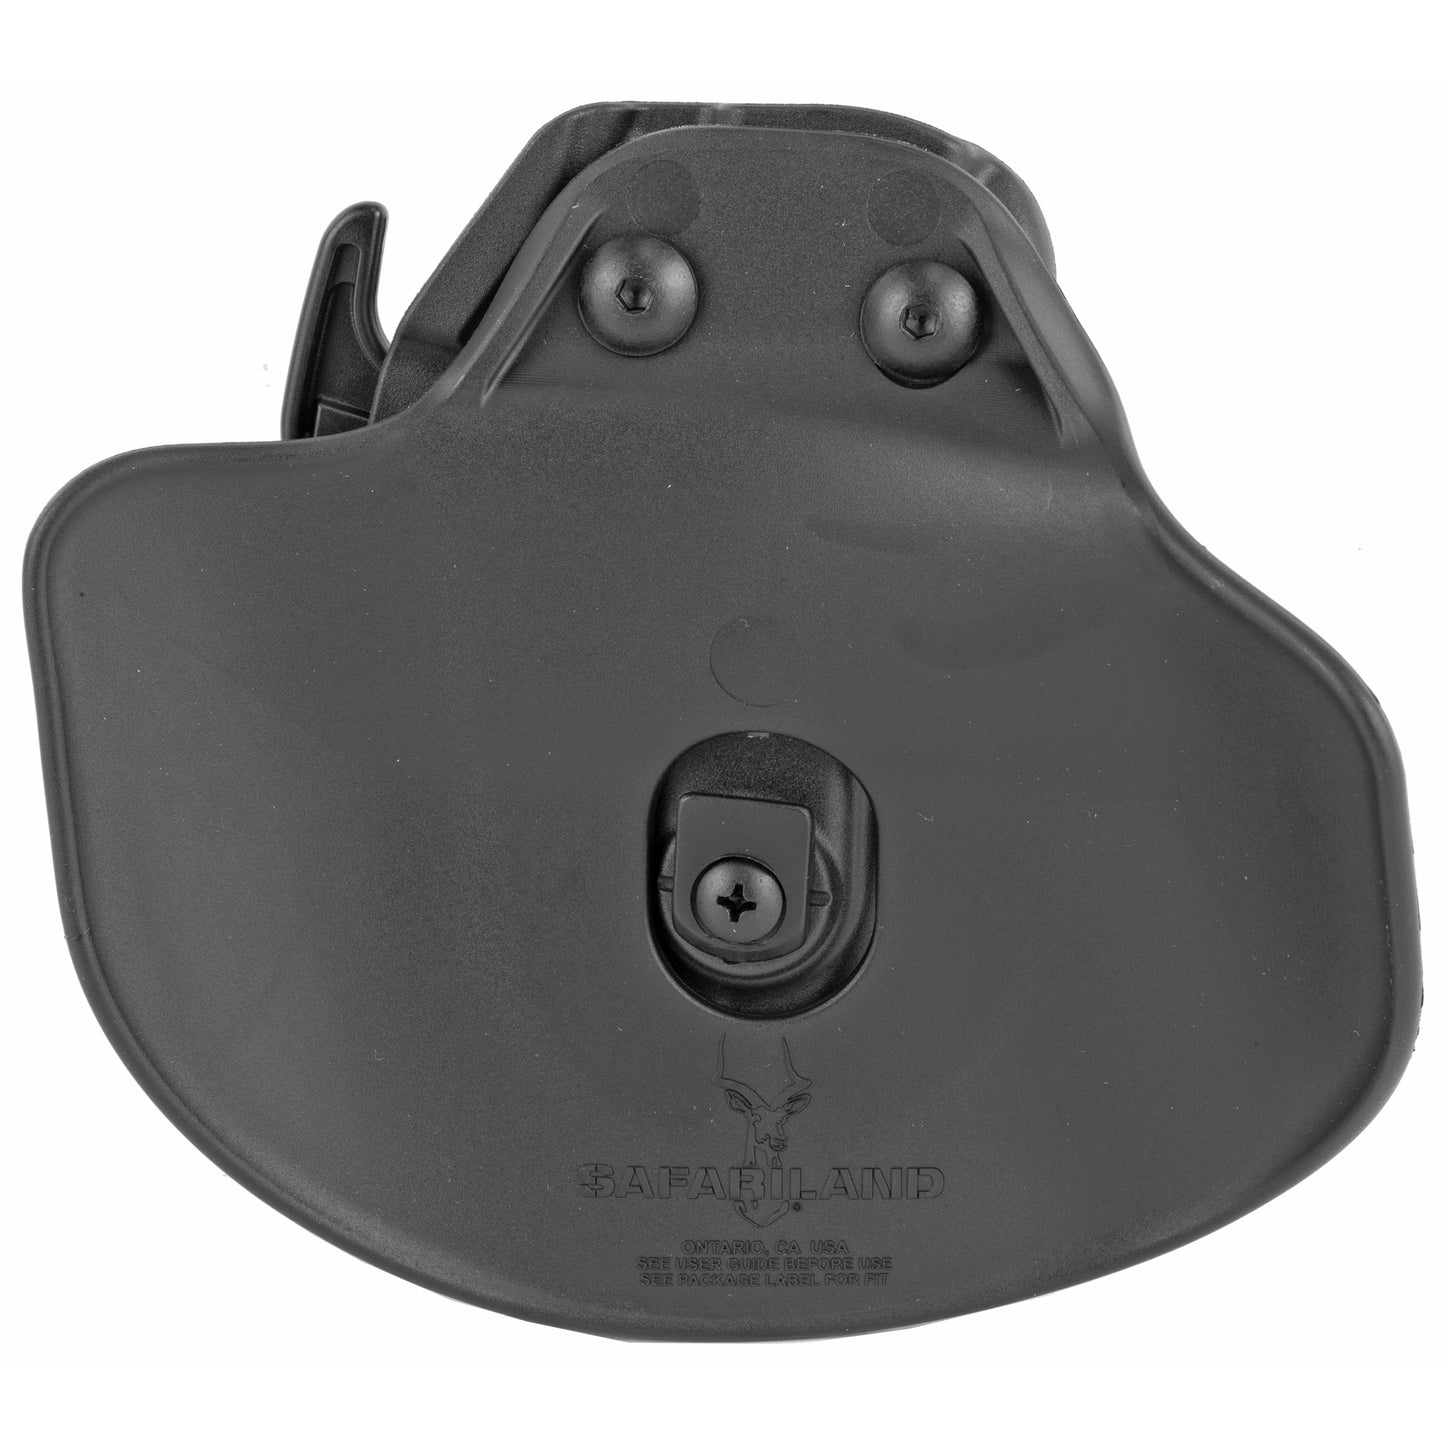 Safariland 578 GLS Pro-Fit Holster Fits Glock 26, 27, 38  Left Hand 578-183-412